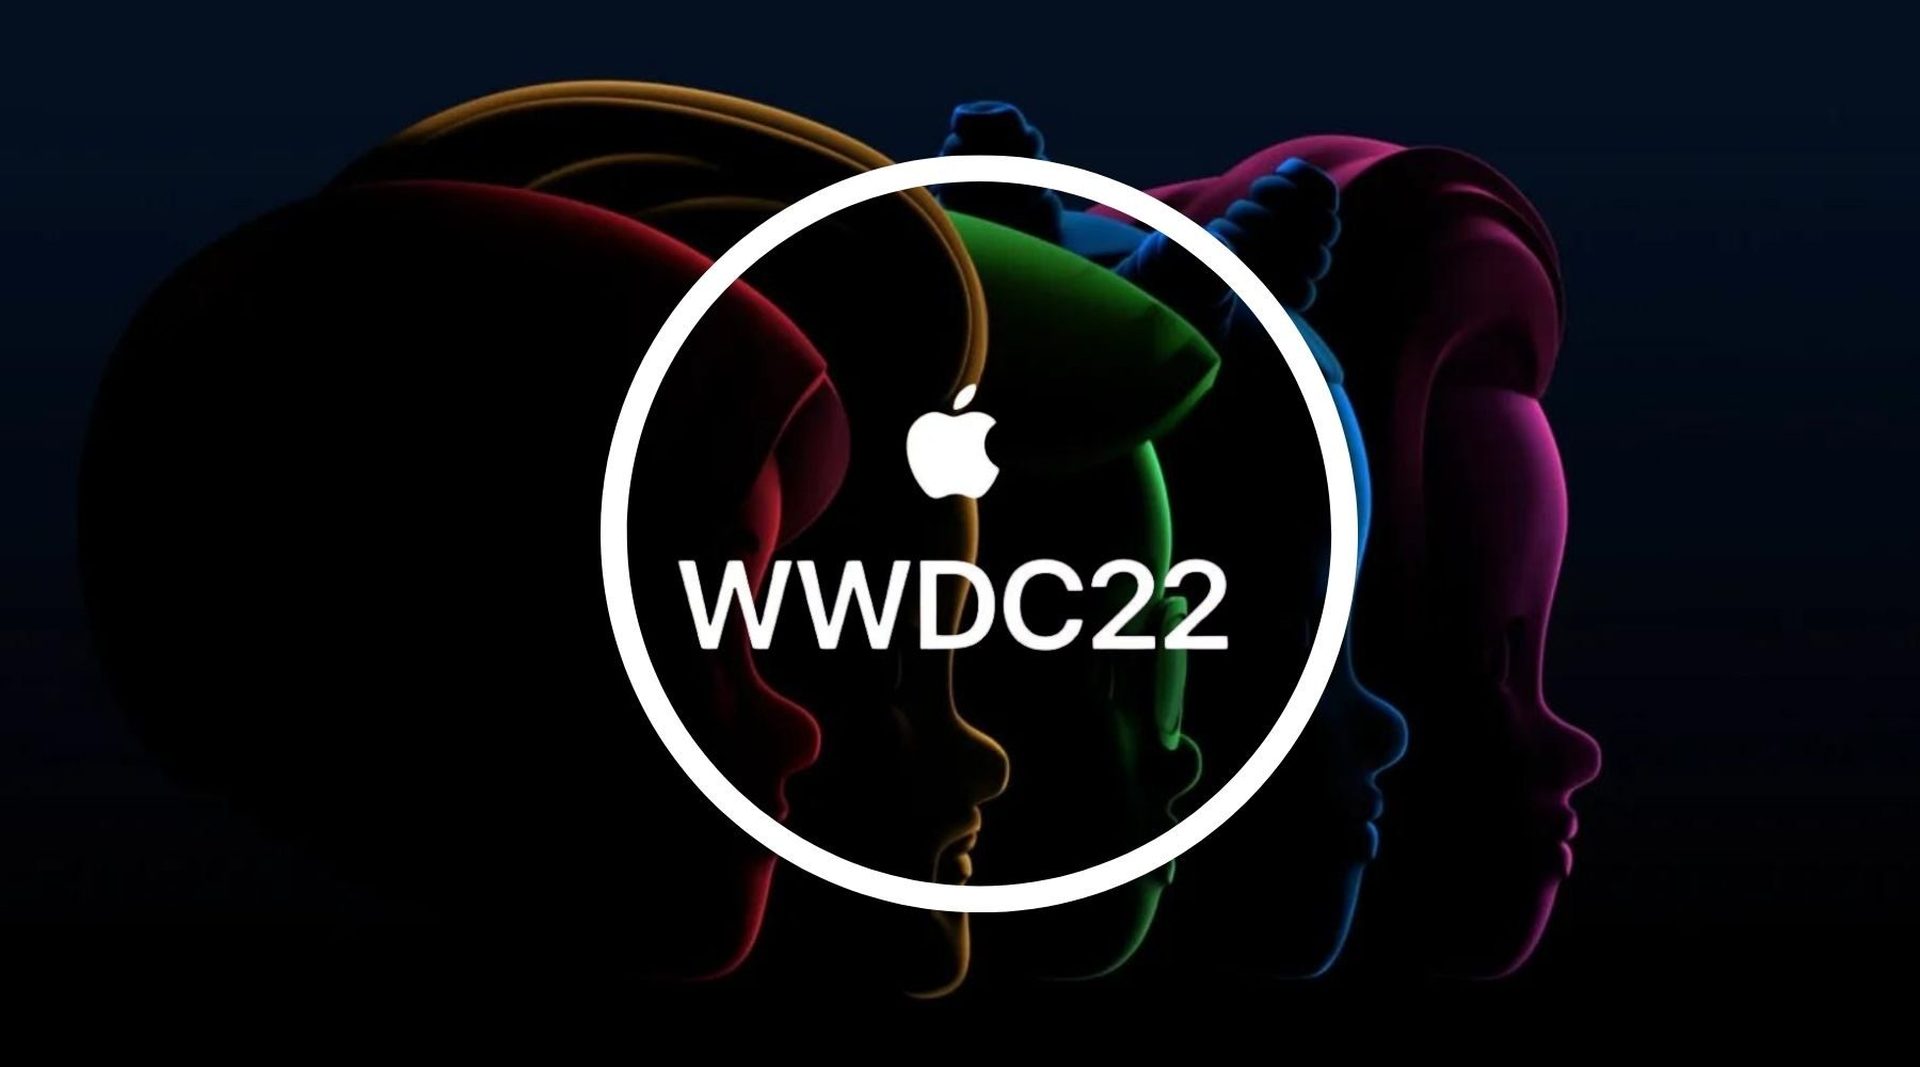 Anúncios da Apple WWDC 2022: pague depois, macOS ventura, chip M2 e muito mais